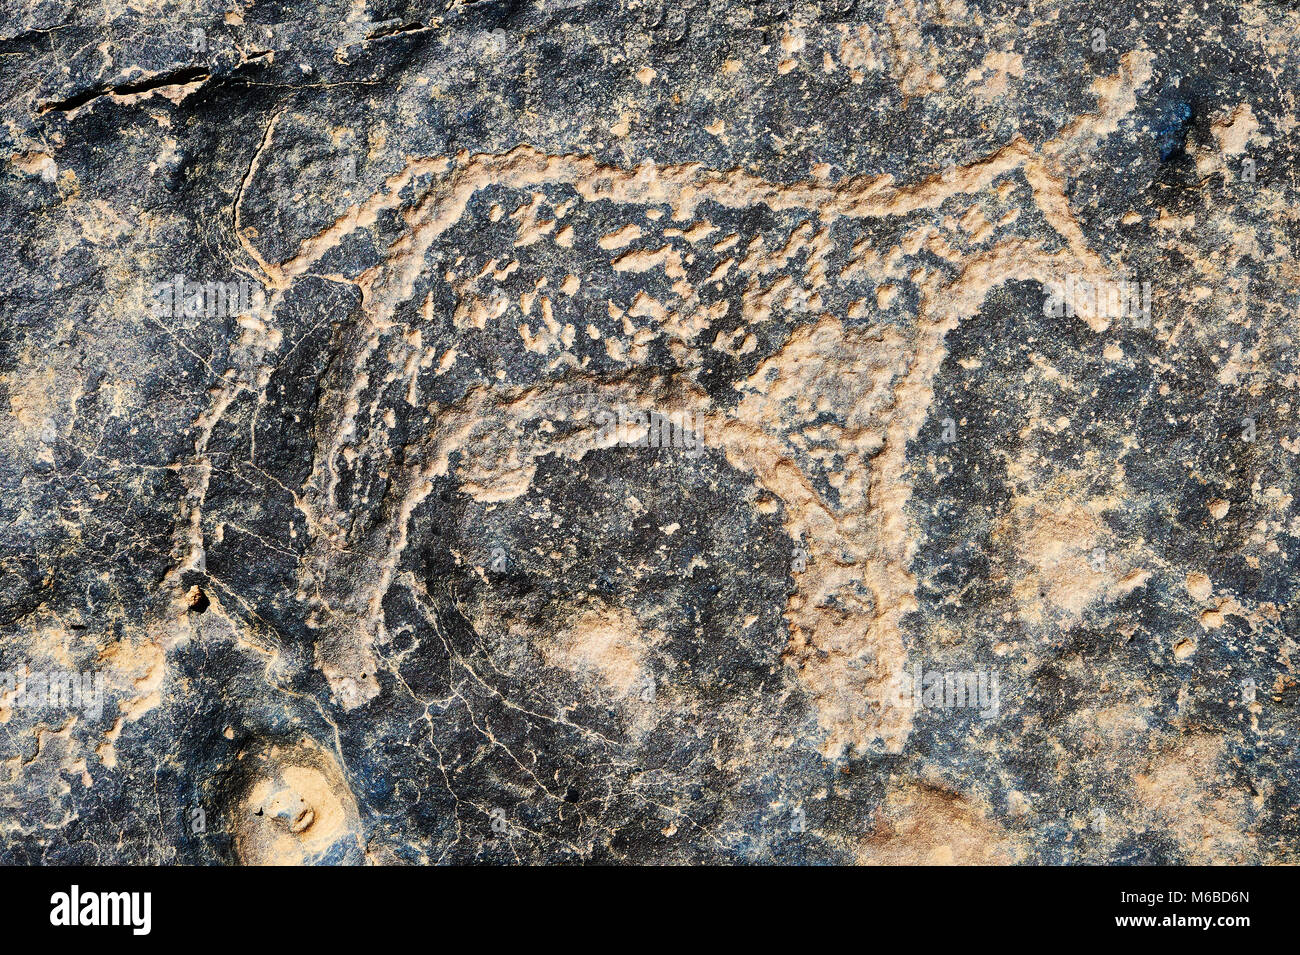 Prähistorische Sahara Petroglyph Kunst Felszeichnungen von Rindern von einer Site 20km östlich von Taouz, Süd-Ost-Marokko Stockfoto